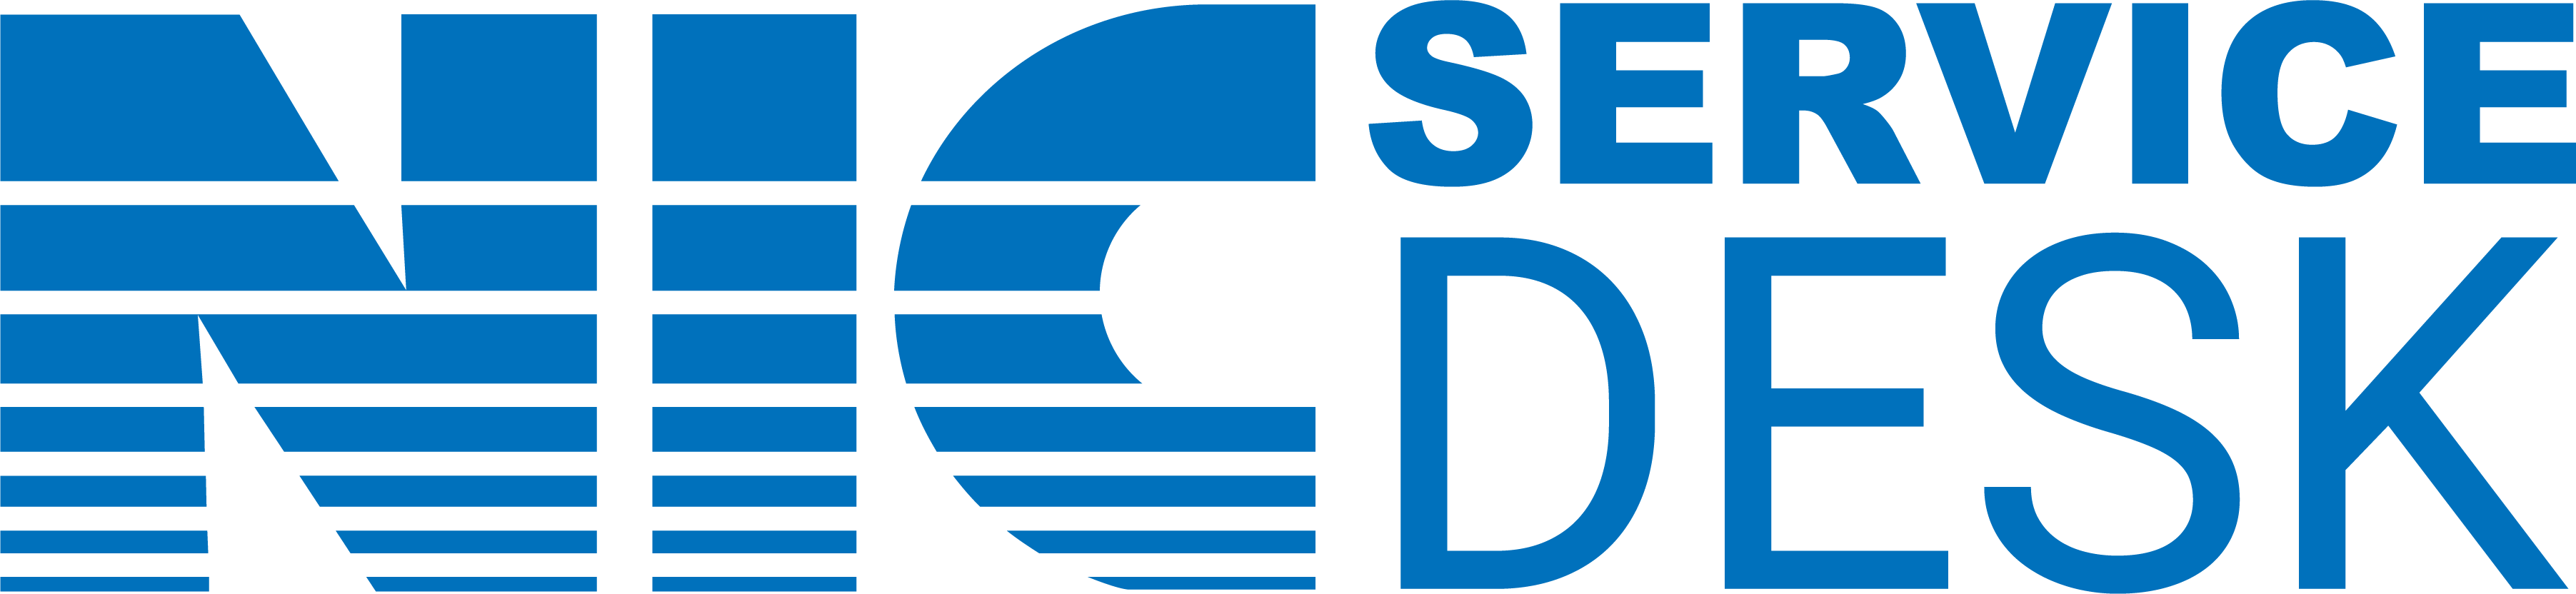 image of nic logo